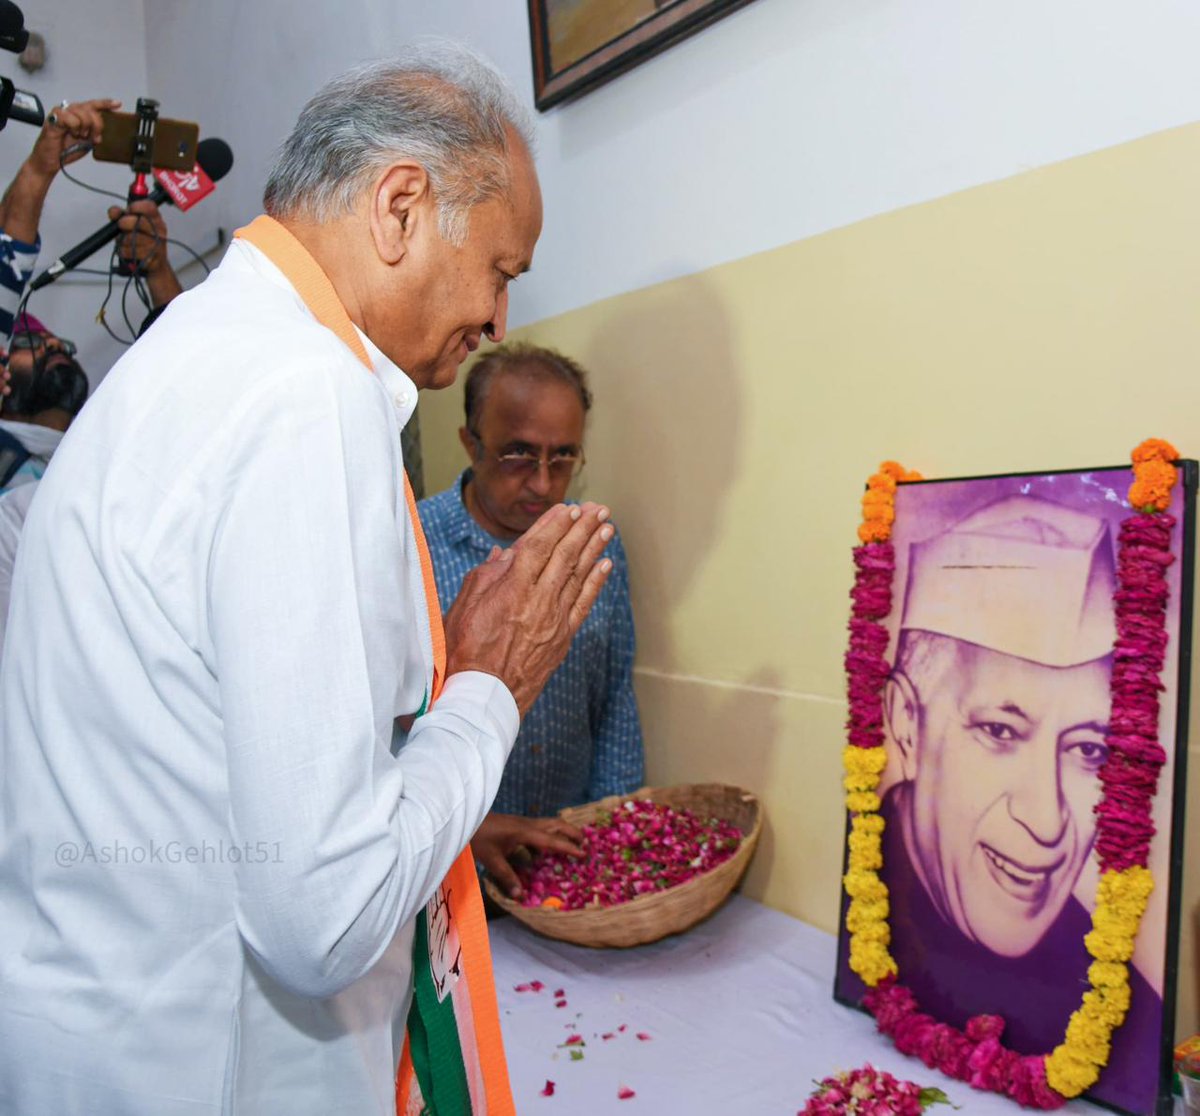 आज राजस्थान कांग्रेस मुख्यालय में प्रथम प्रधानमंत्री पं. जवाहरलाल नेहरू जी की पुण्यतिथि के अवसर पर उन्हें श्रद्धांजलि दी। स्वतंत्रता संग्राम, शांति स्थापना, आधुनिक भारत के निर्माण में आपके योगदान का देश कृतज्ञ है।